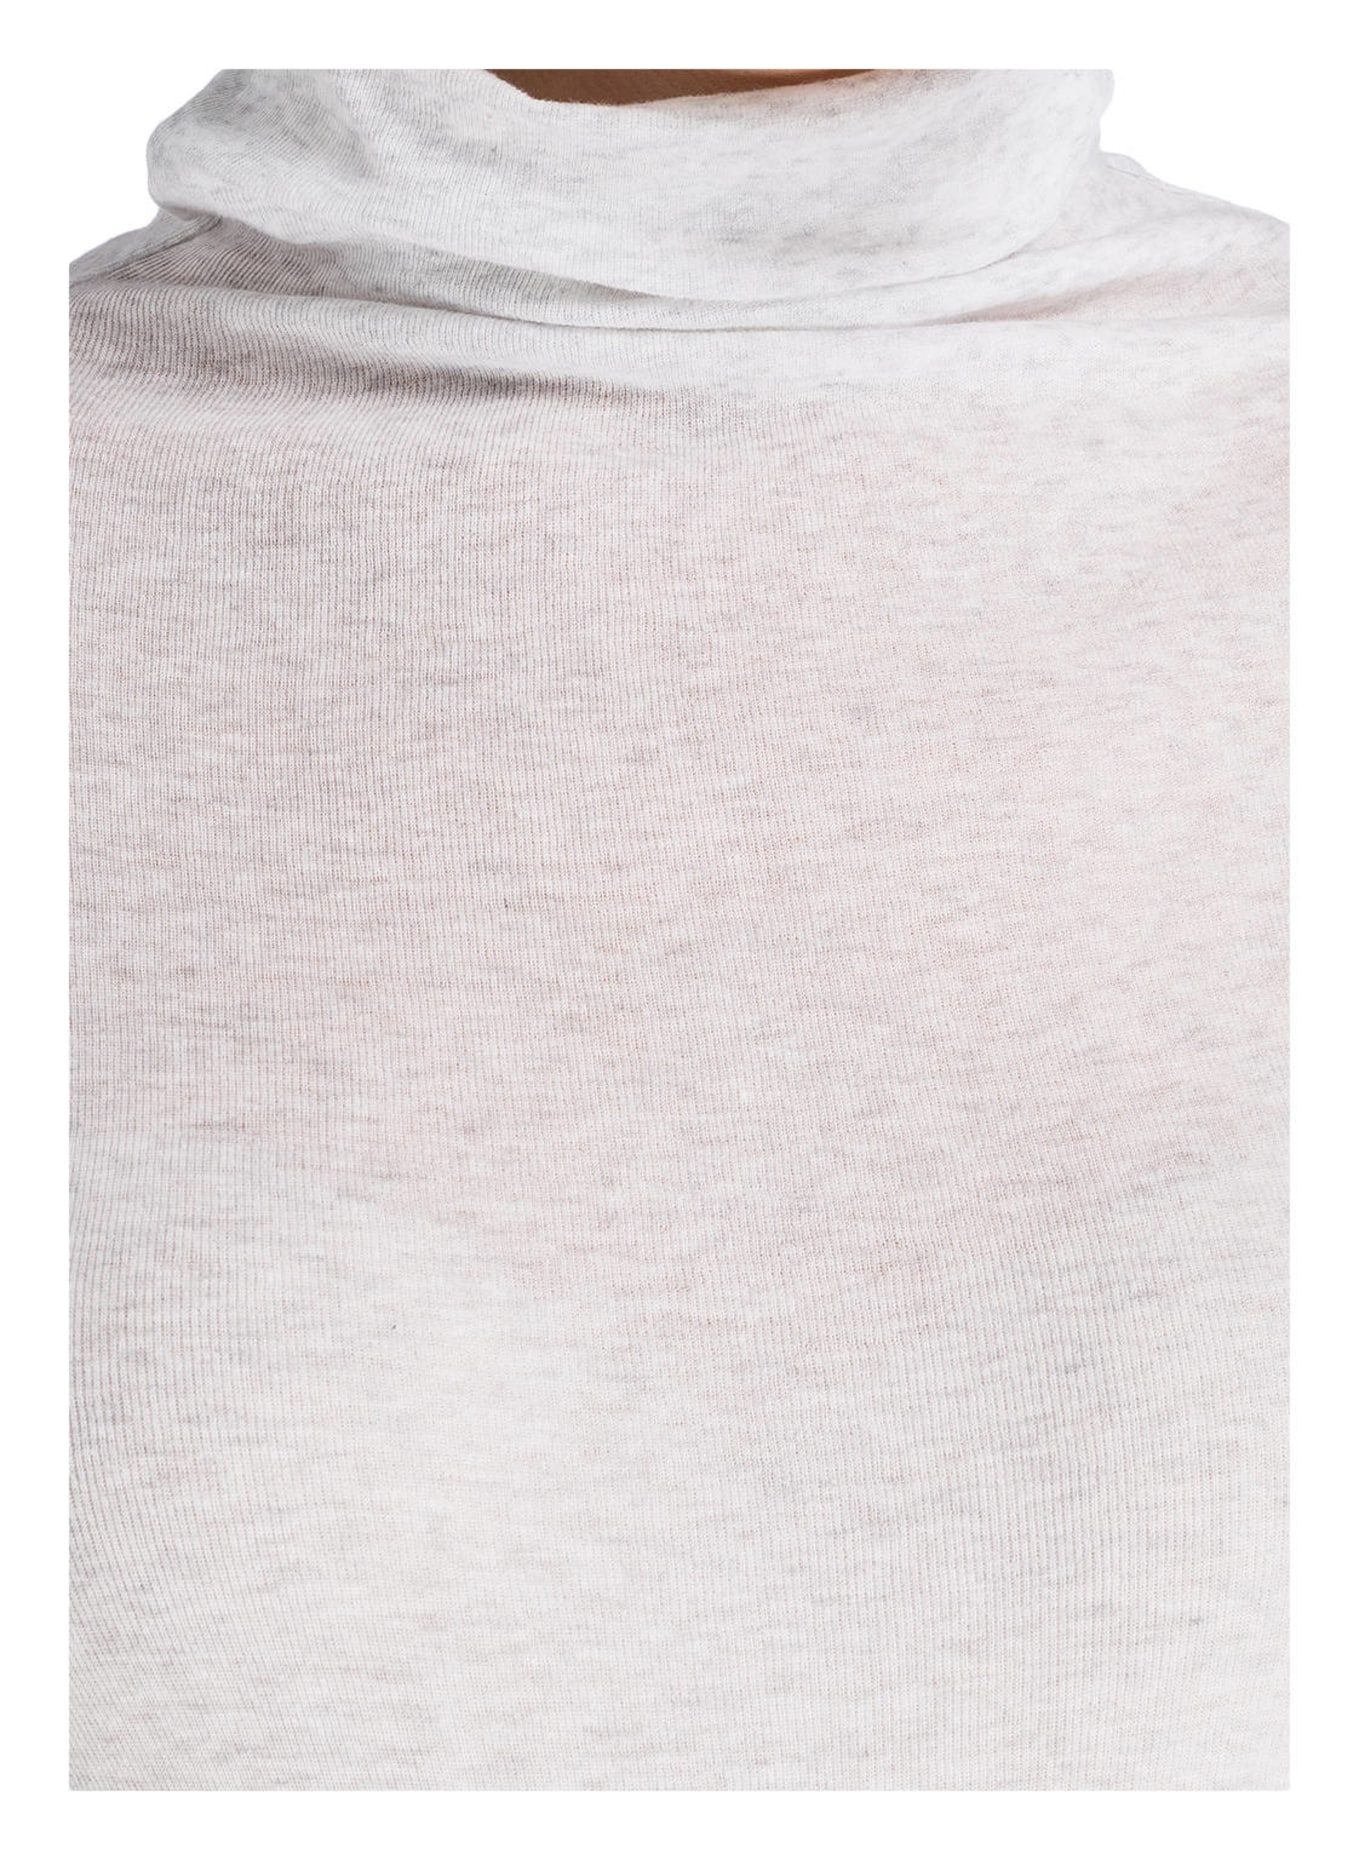 American Vintage Turtleneck shirt, Color: LIGHT GRAY MÉLANGE (Image 4)